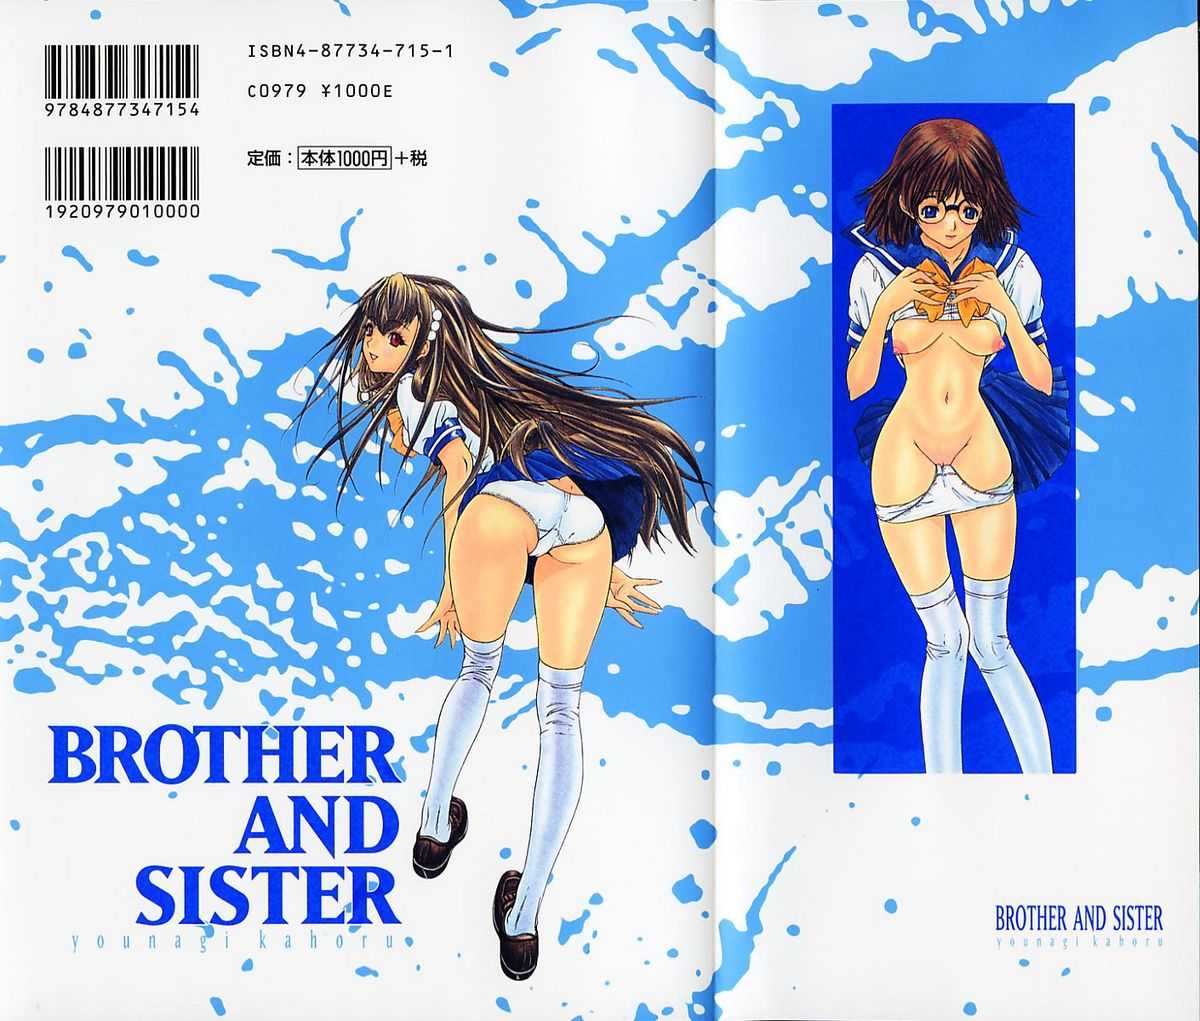 [Younagi Kahoru] BROTHER AND SISTER 